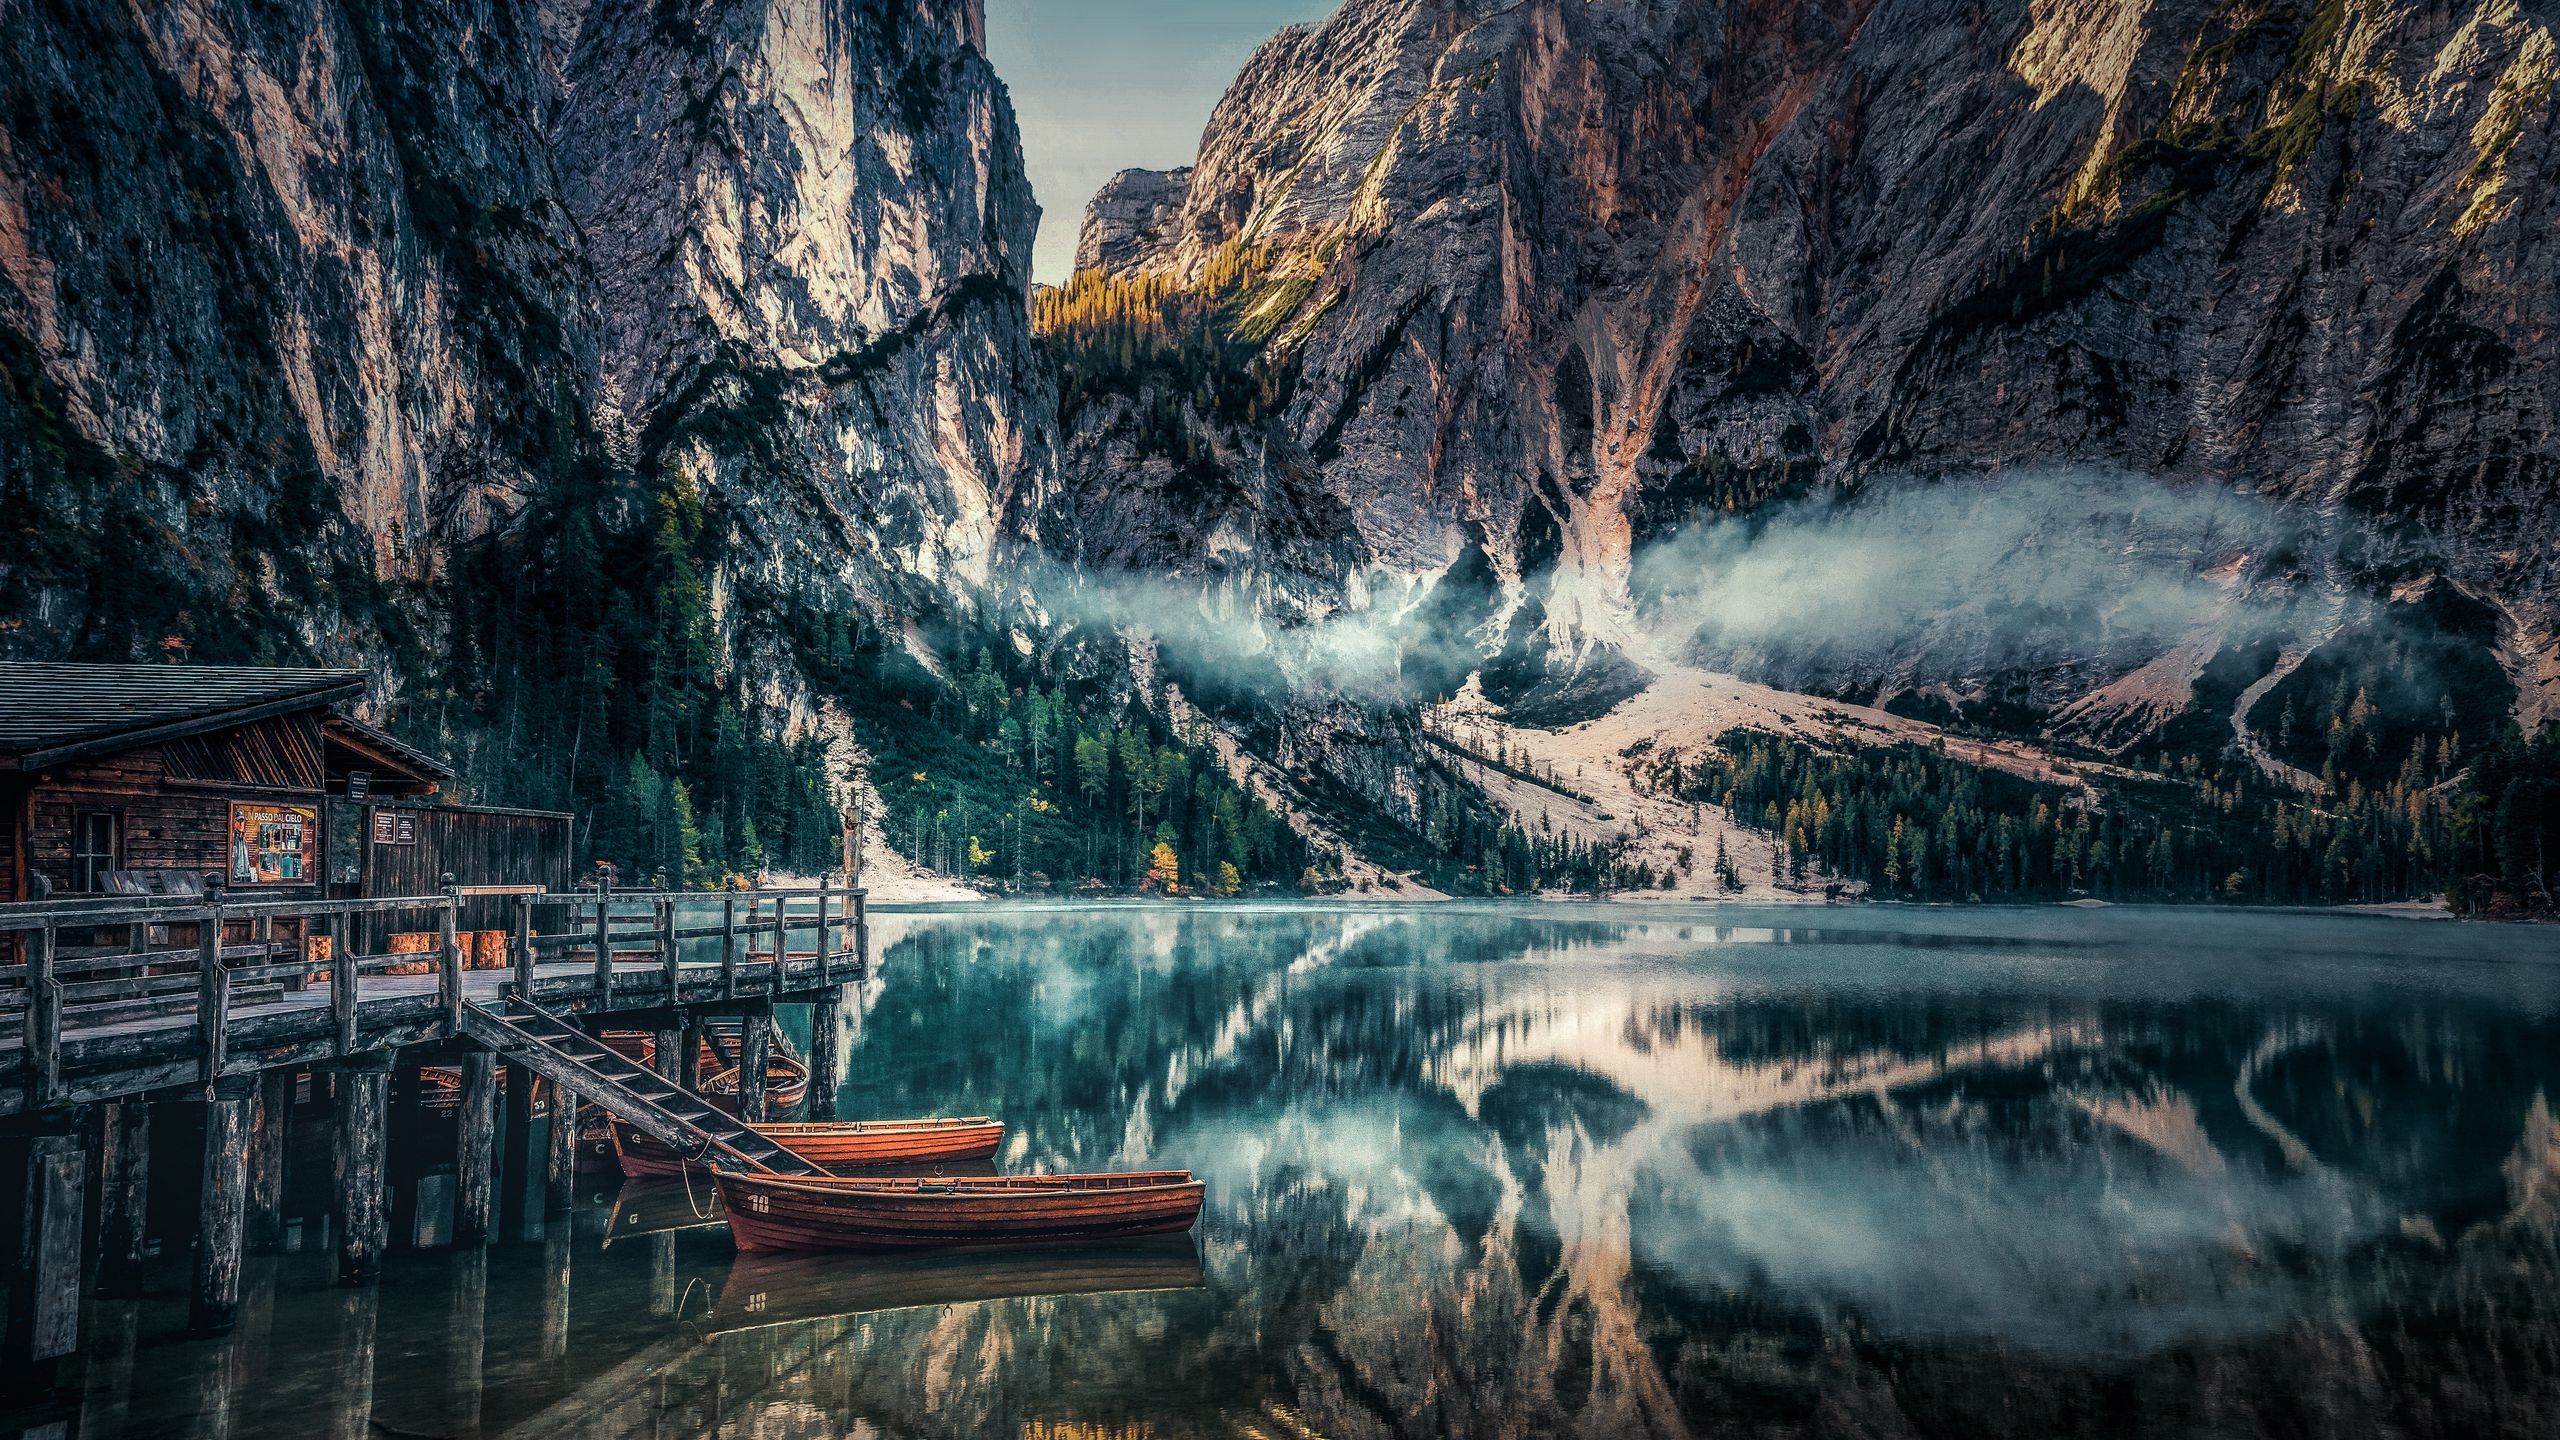 Download wallpaper 2560x1440 mountains, reflection, kayak, fog